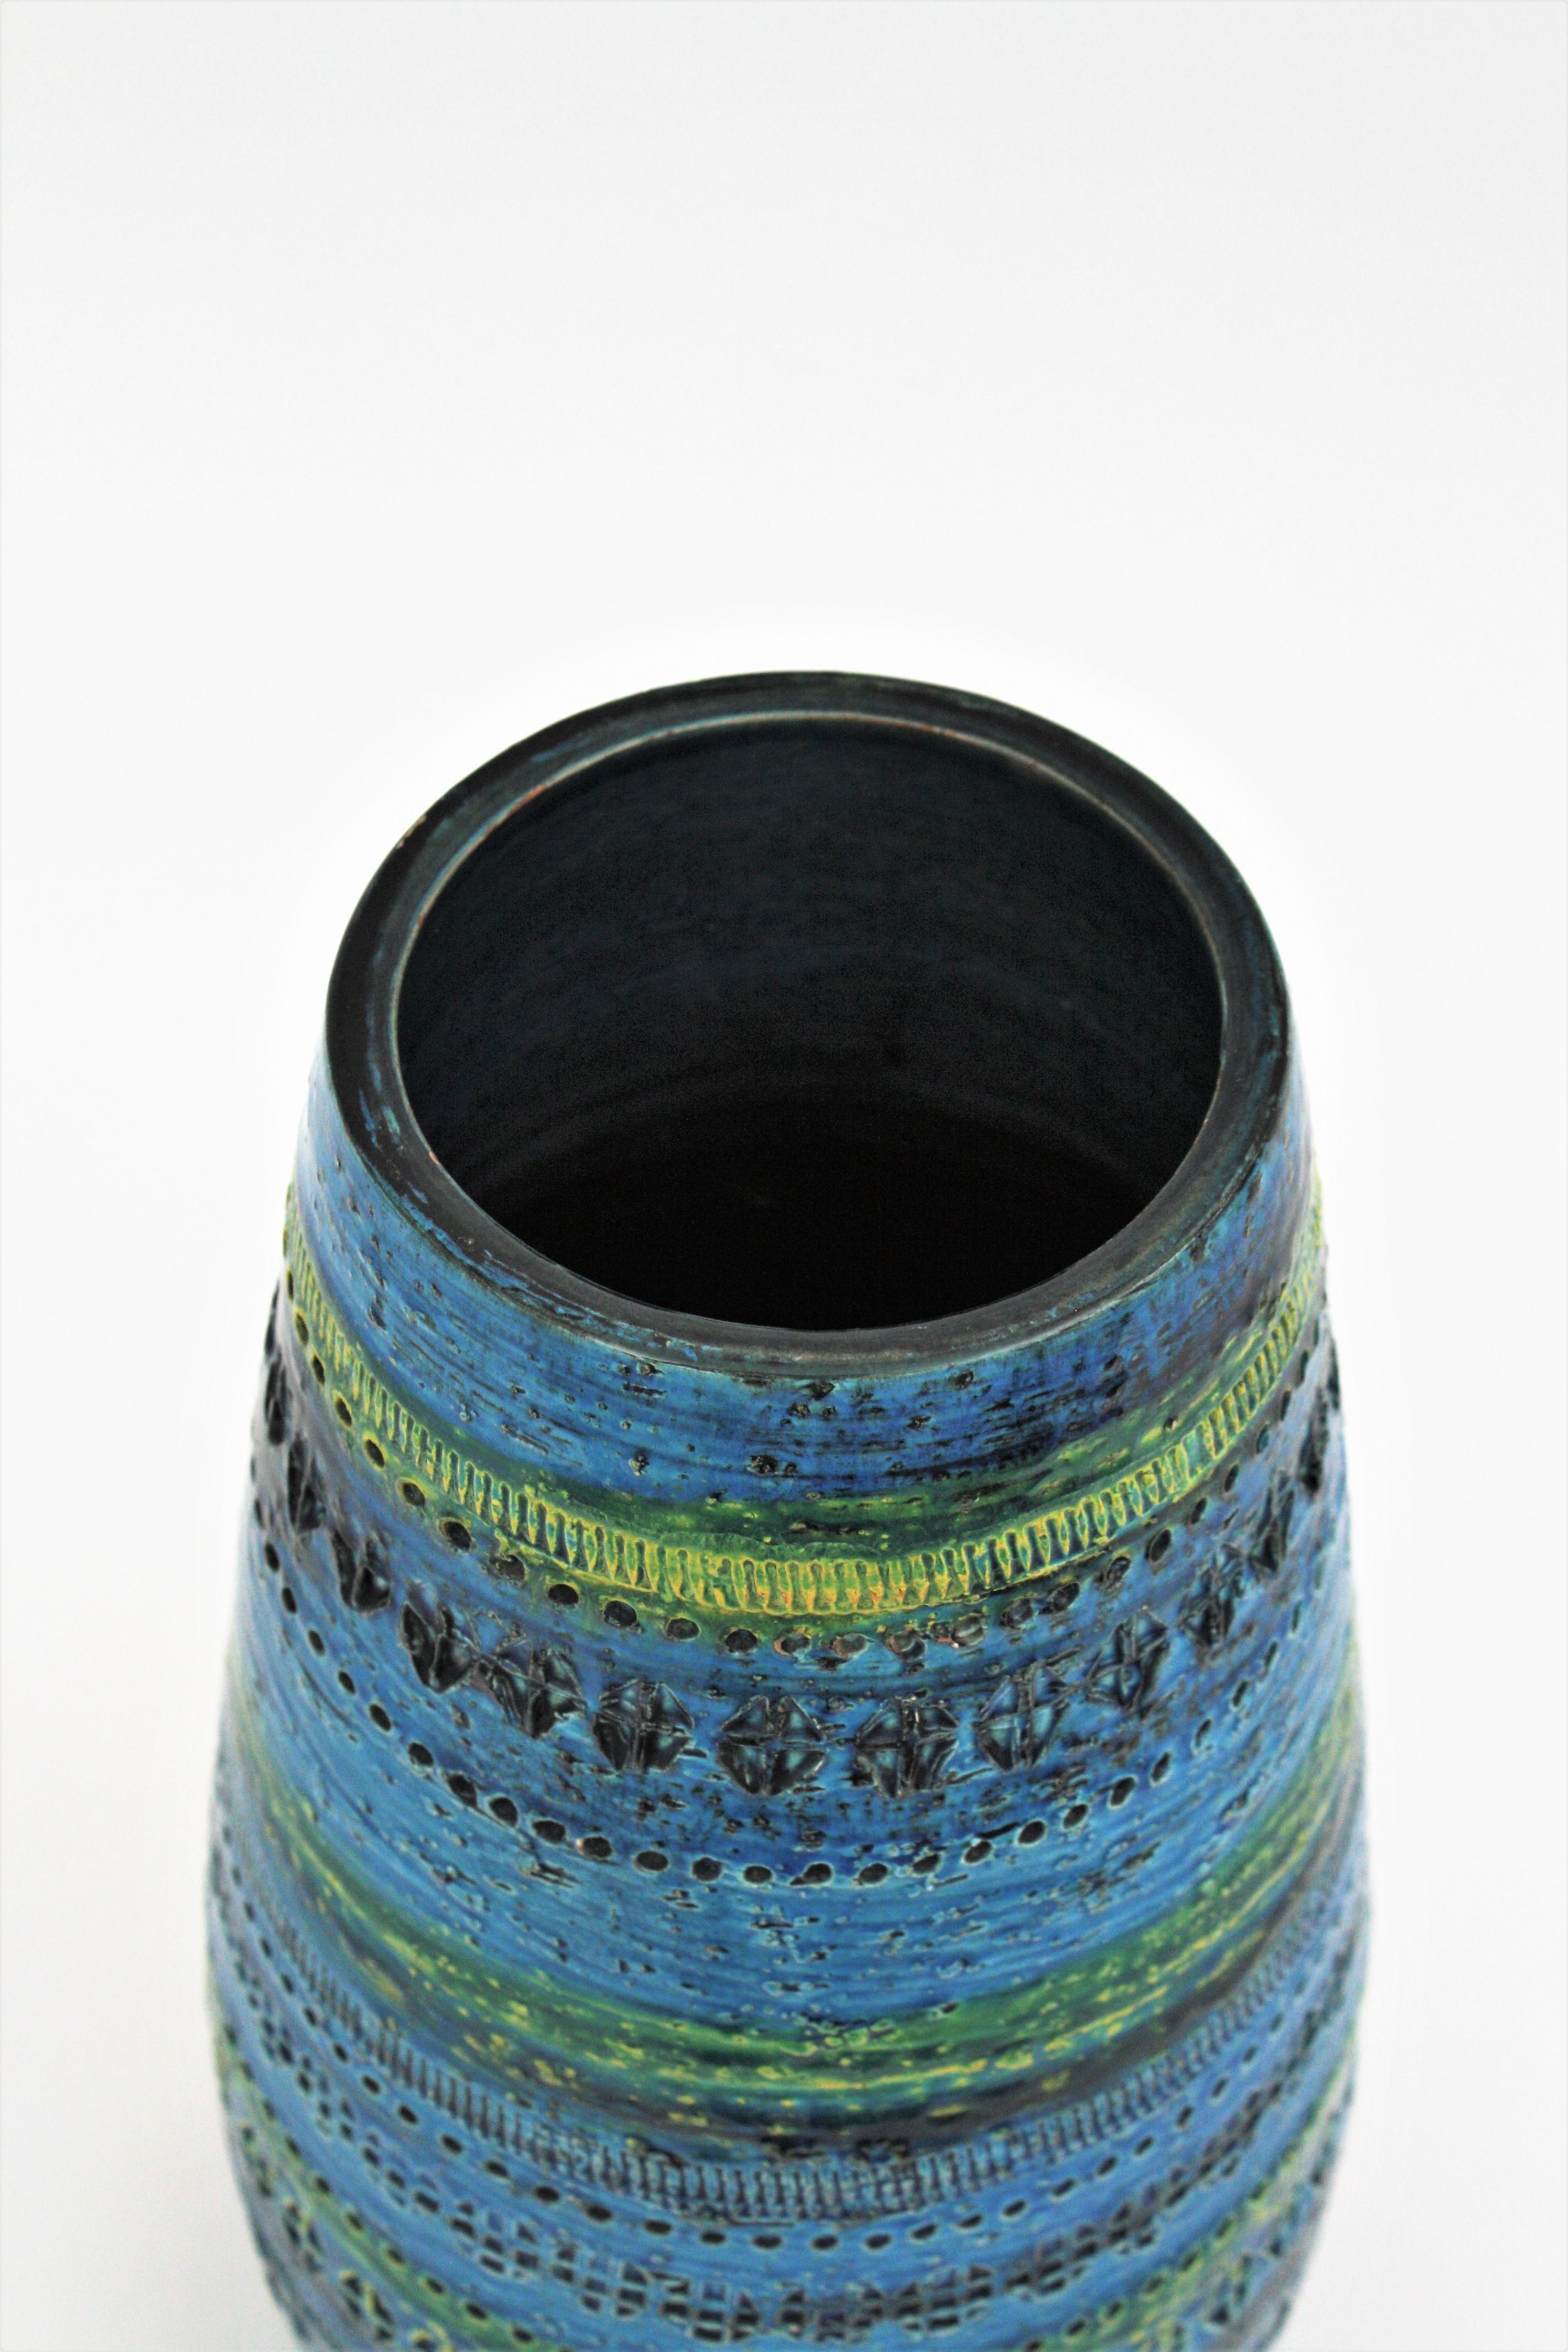 Aldo Londi Bitossi Rimini Blue Glazed Ceramic Ovoid Large Vase 5